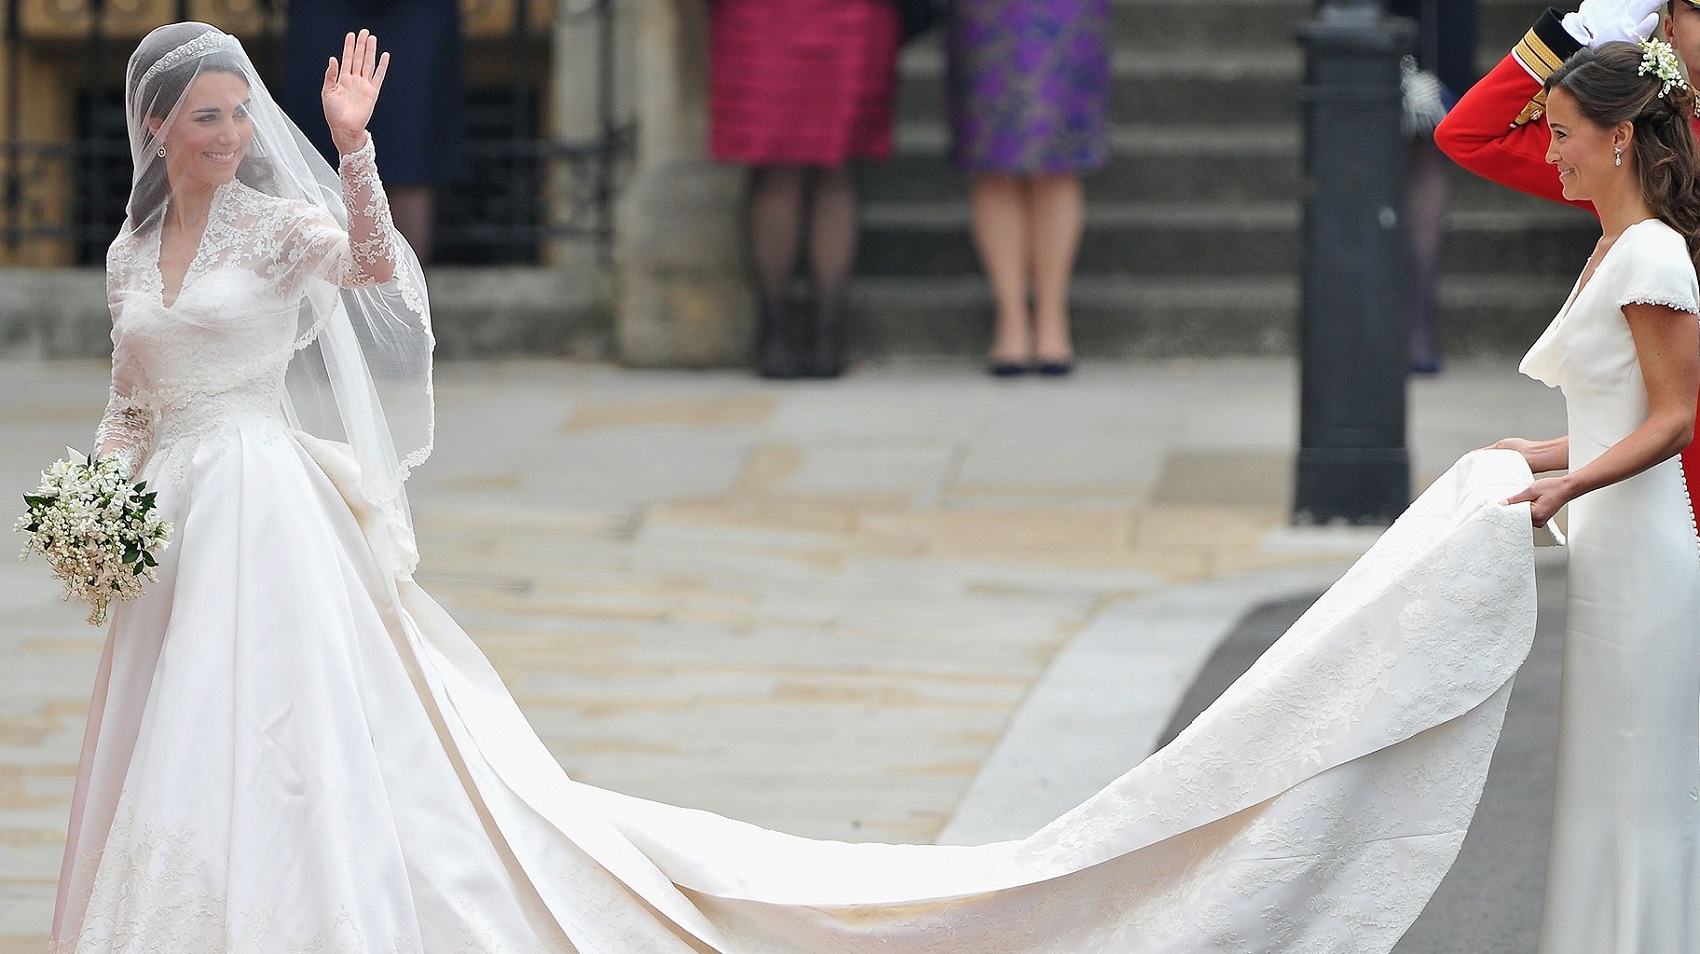 La falda de plumas que unió a novias y diseñadoras de moda - Foto 1